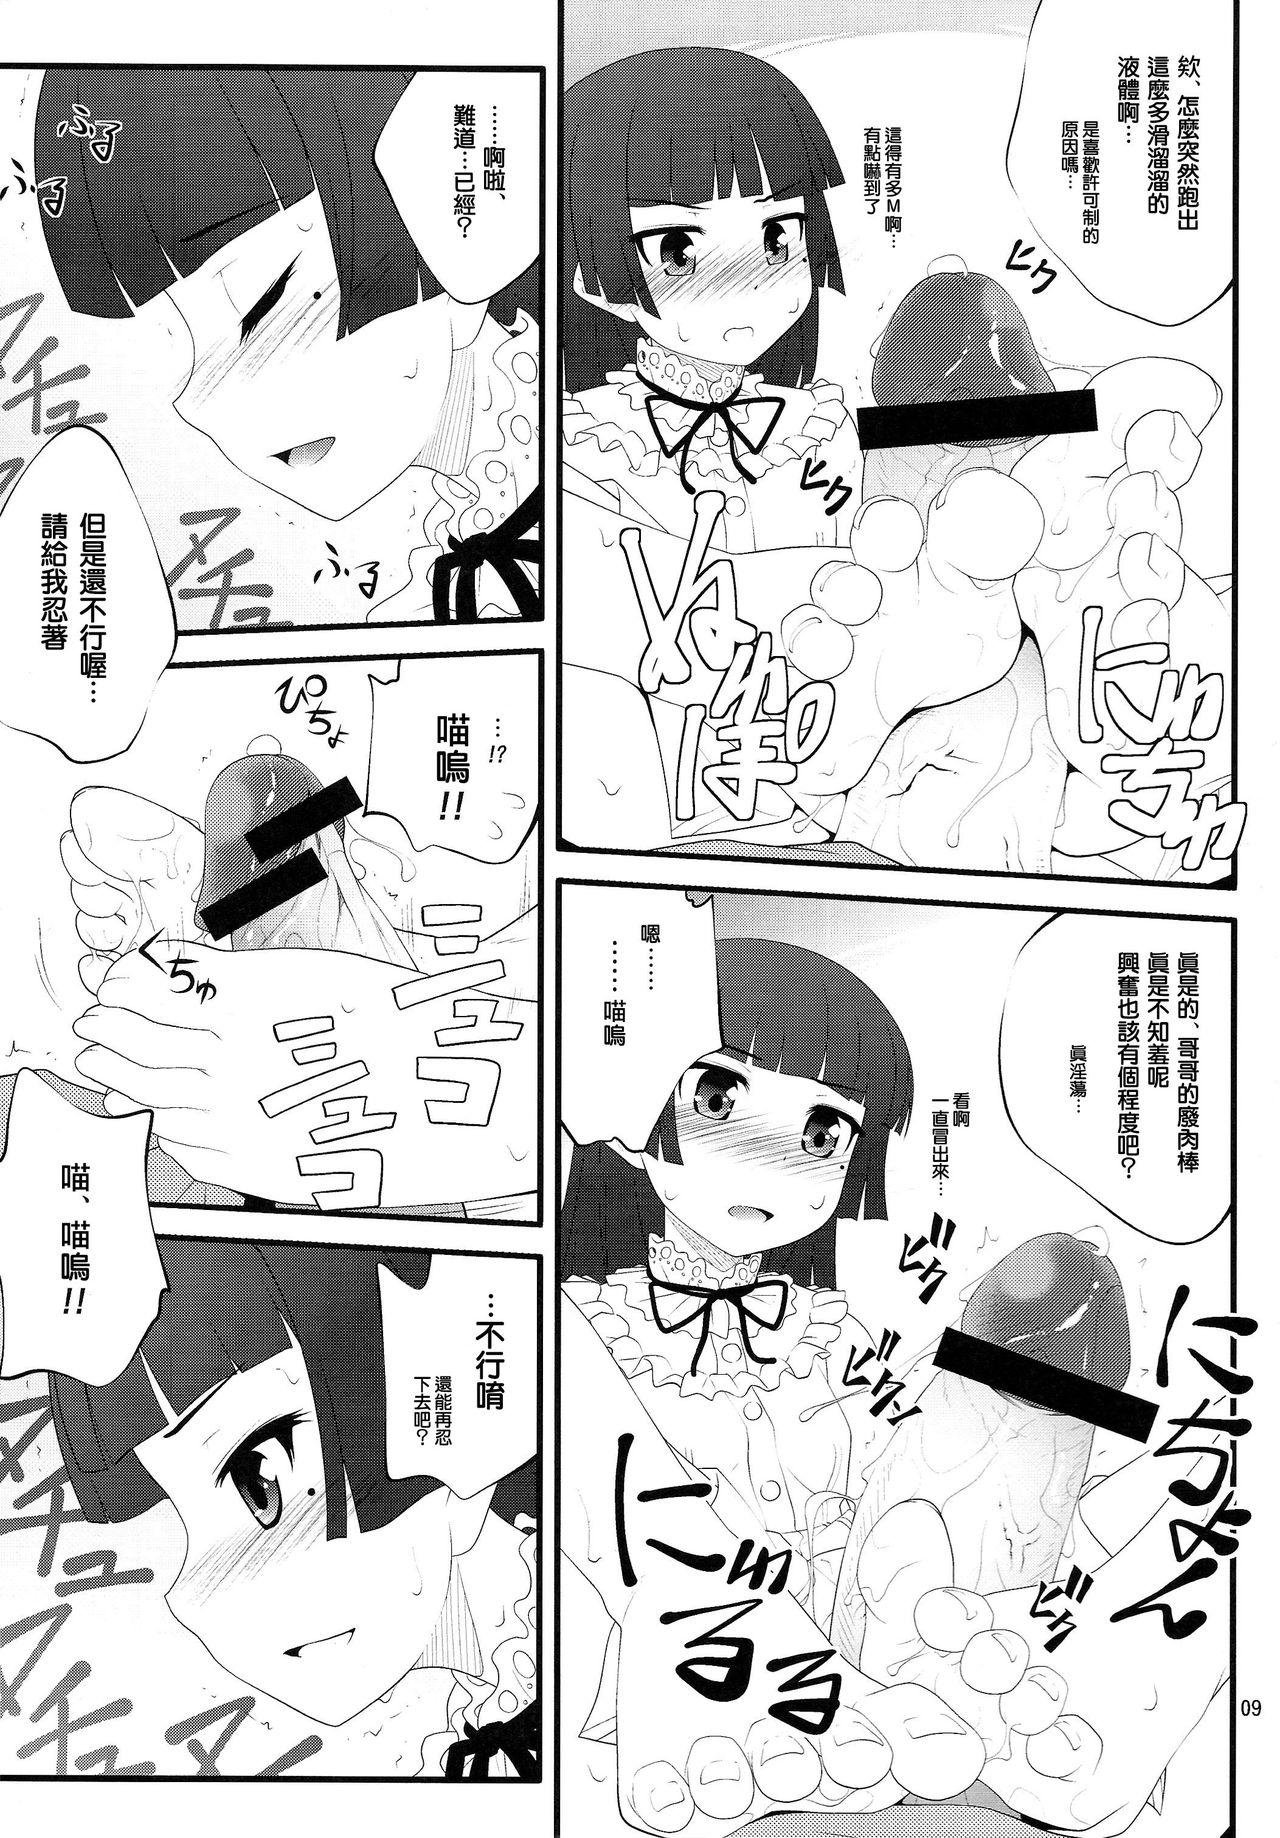 Celebrity Sex Nii-san, Ashi Monde Choudai After - Ore no imouto ga konna ni kawaii wake ga nai Asians - Page 9